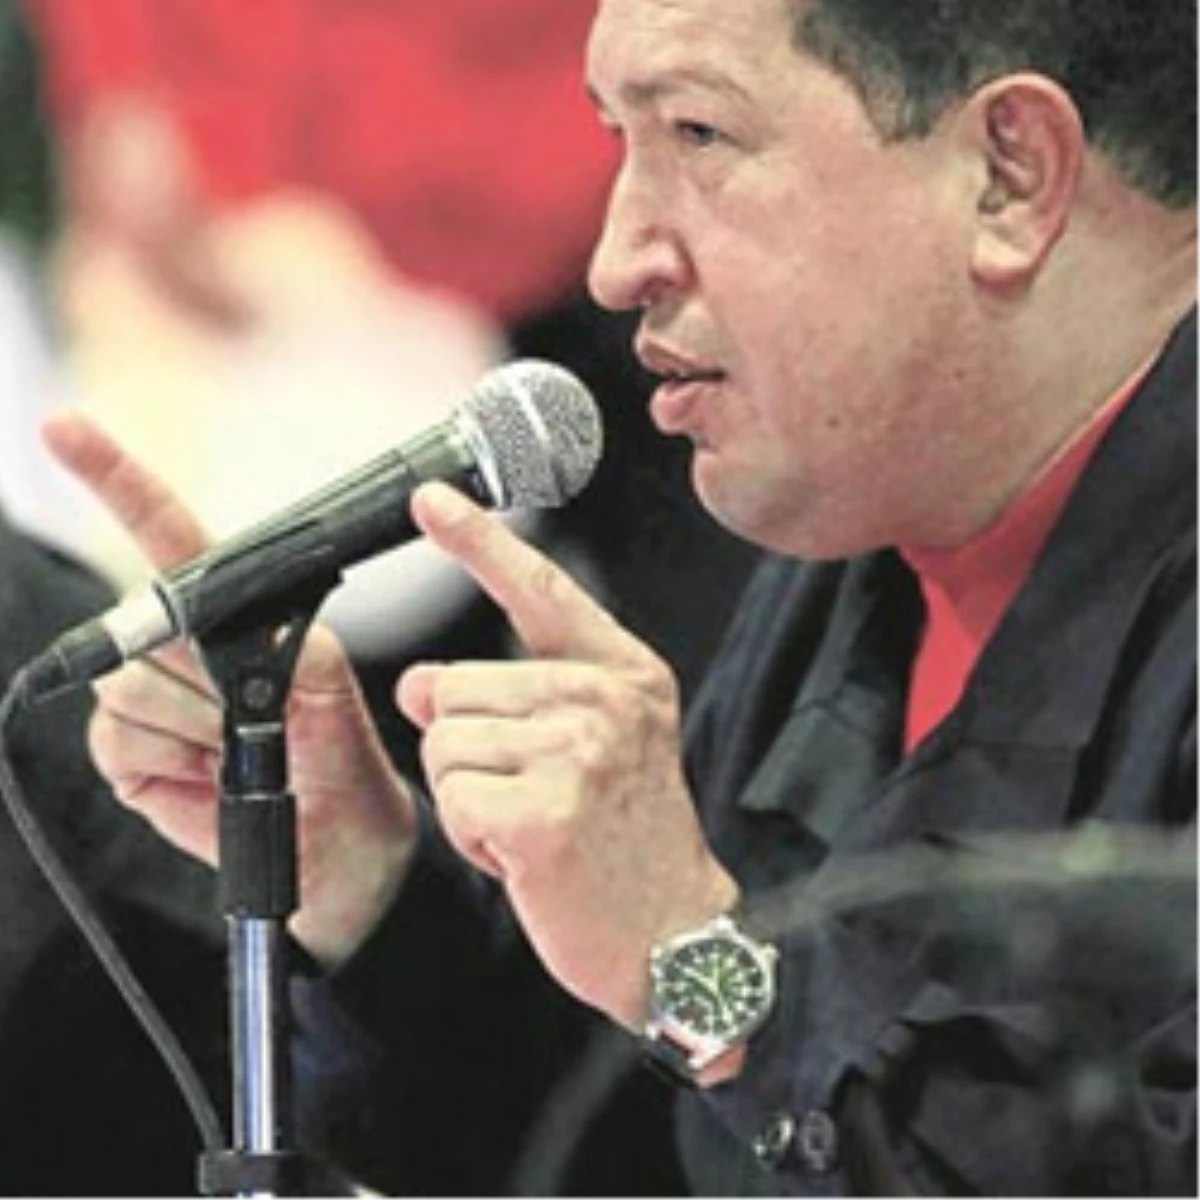 Chavez’in Tepesi Attı ‘Savaş’ Dedi
